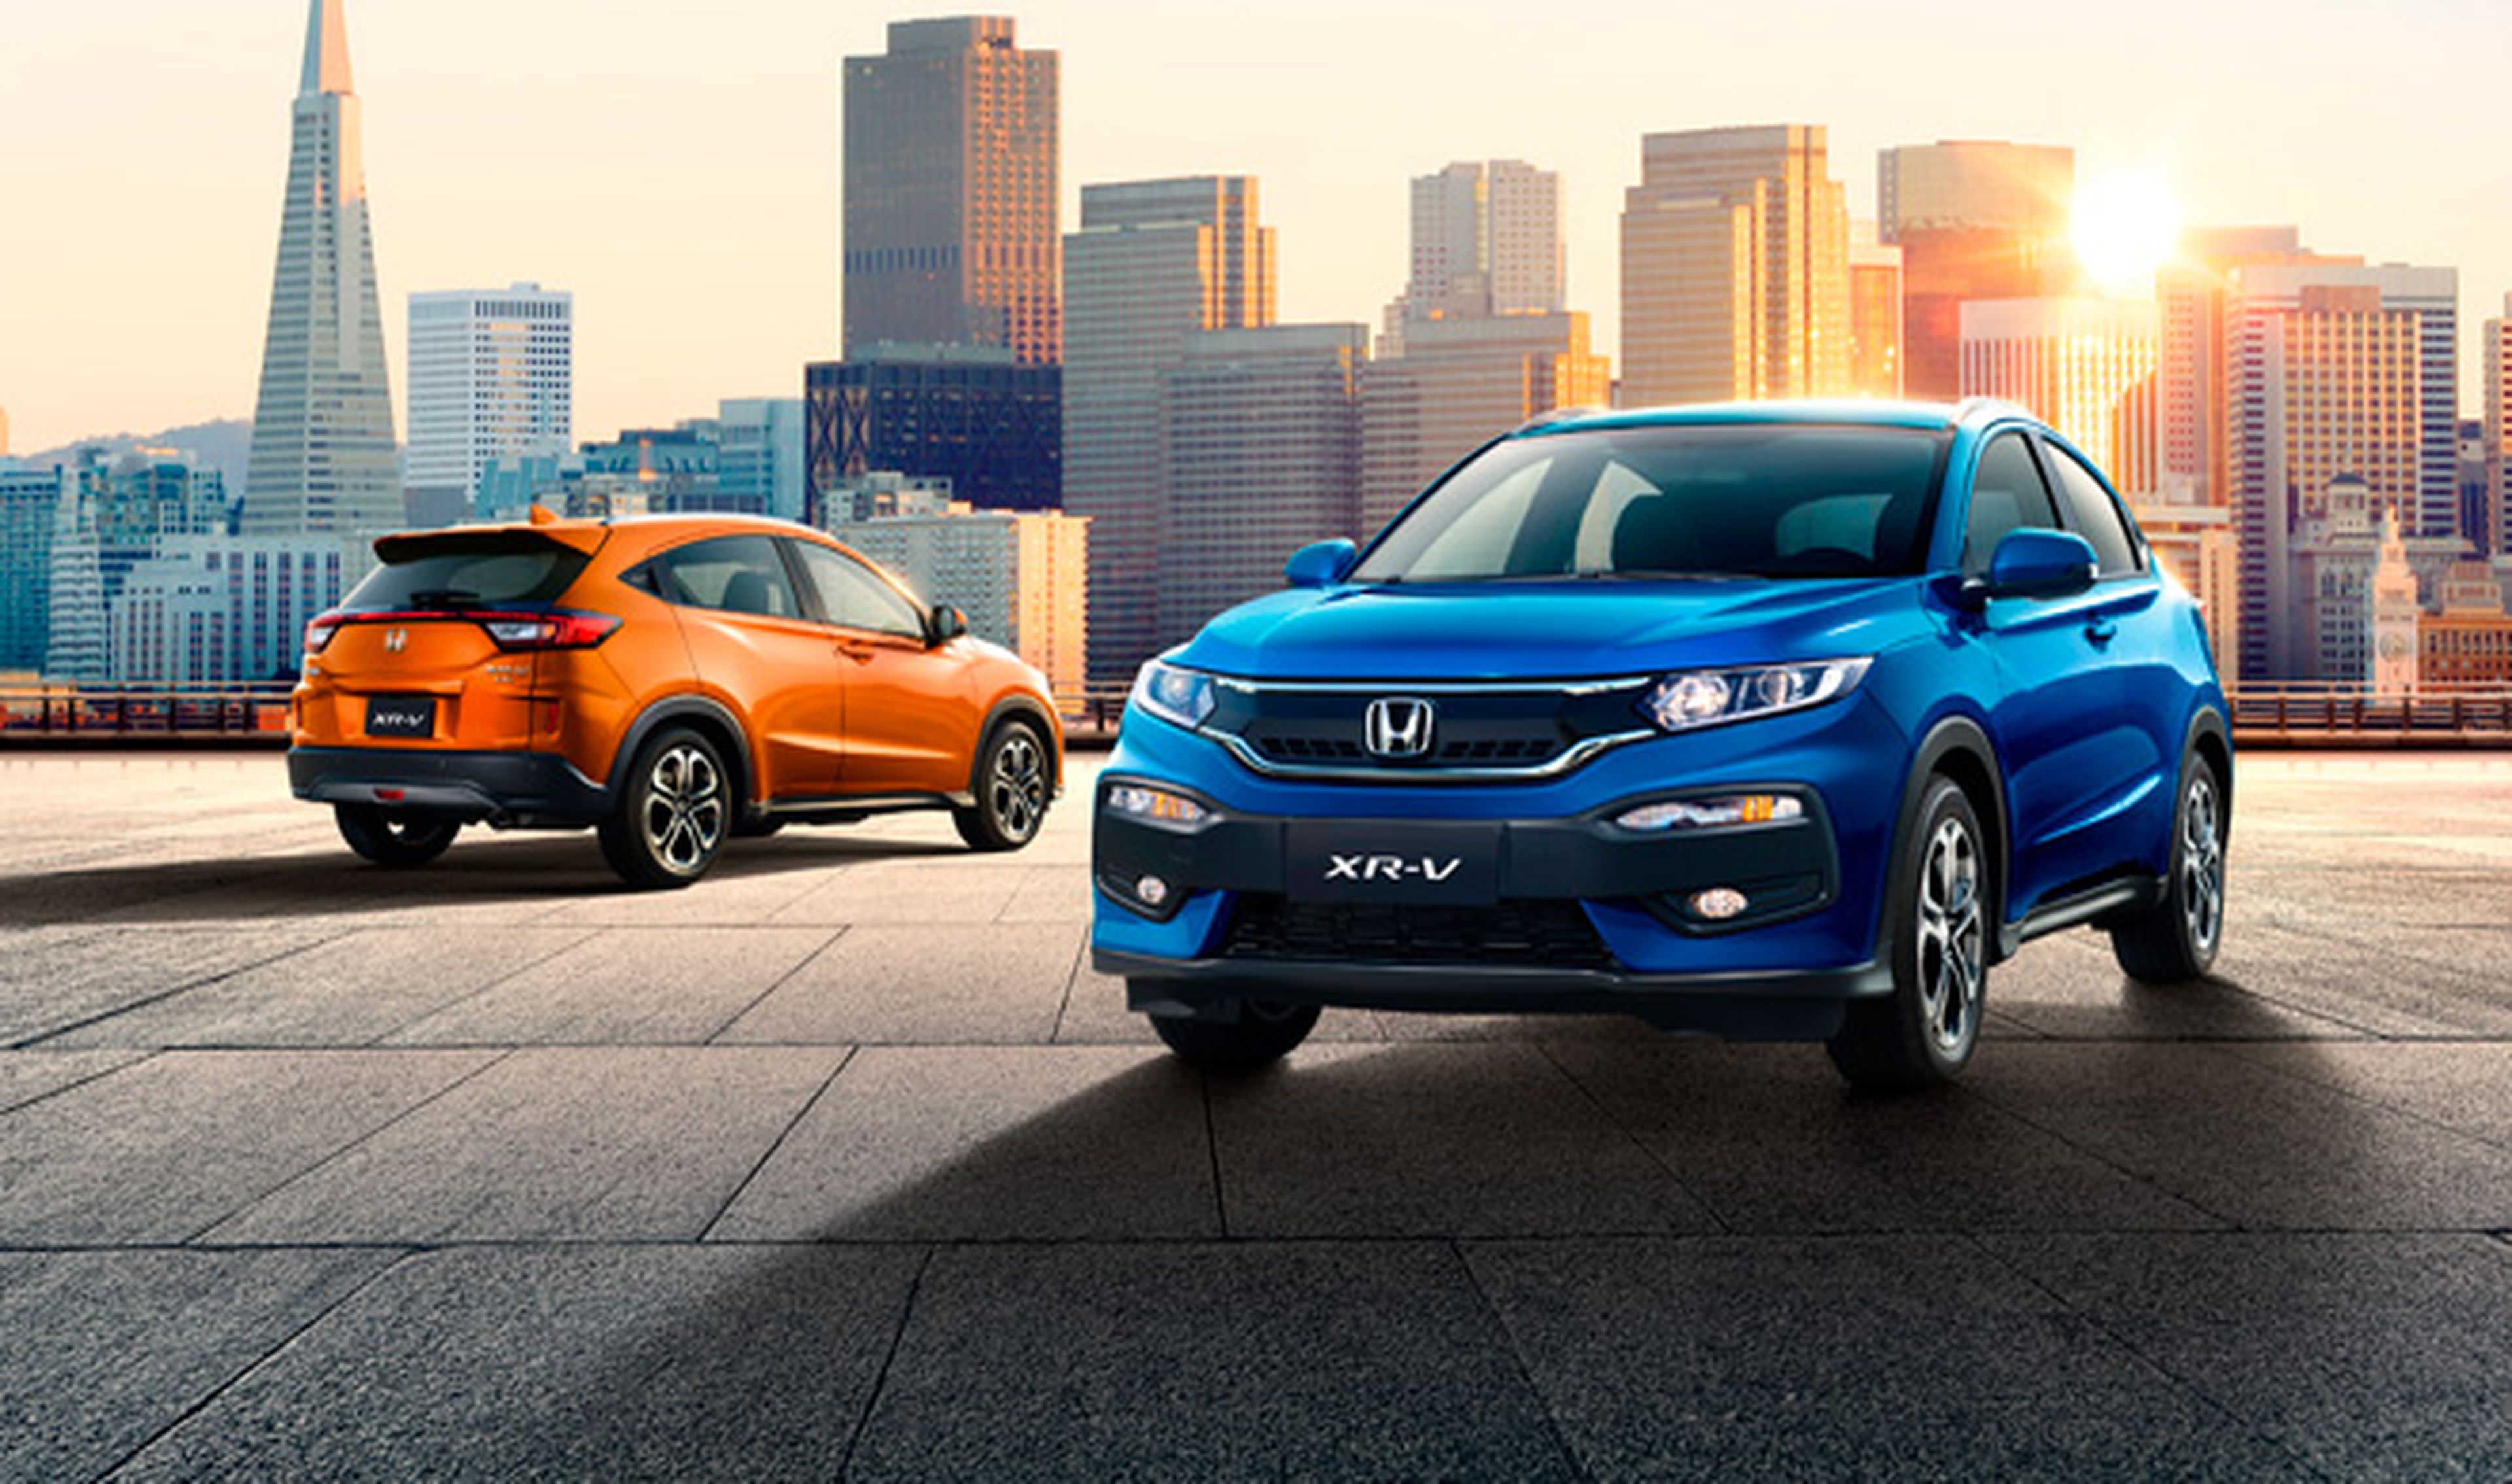 Honda llama a revisión a 51 millones de vehículos